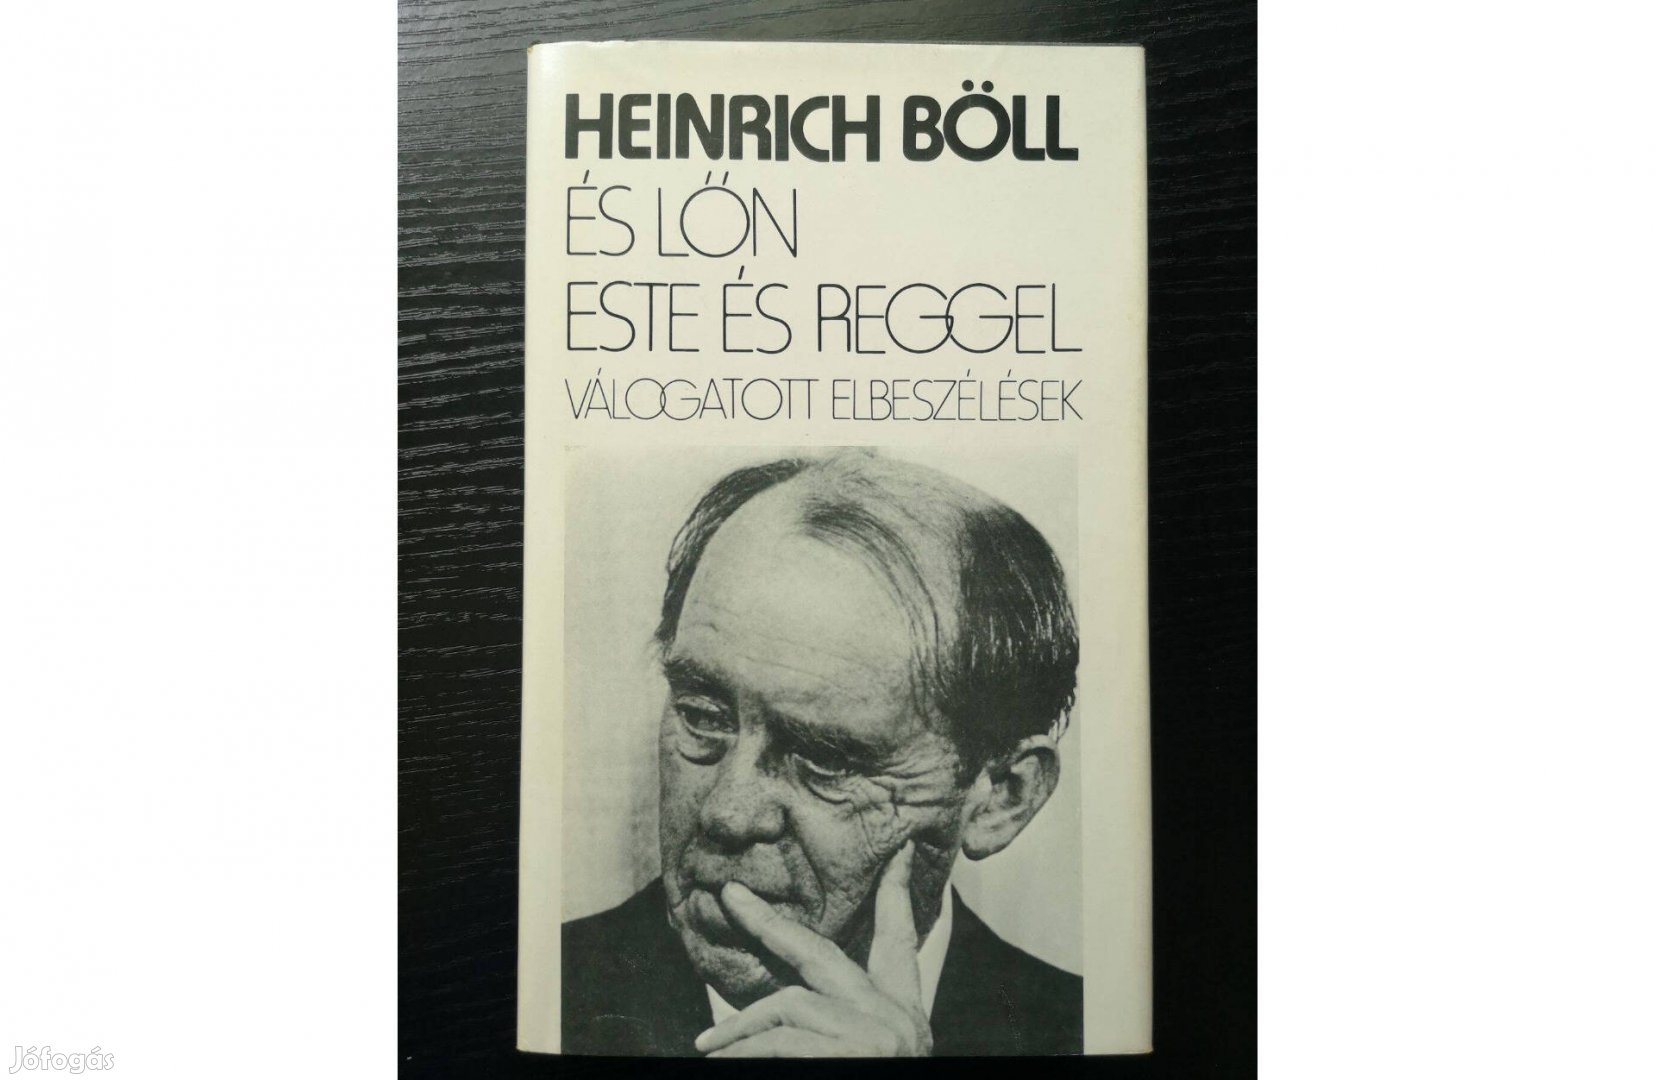 Heinrich Böll: És lőn este és reggel - válogatott elbeszélések